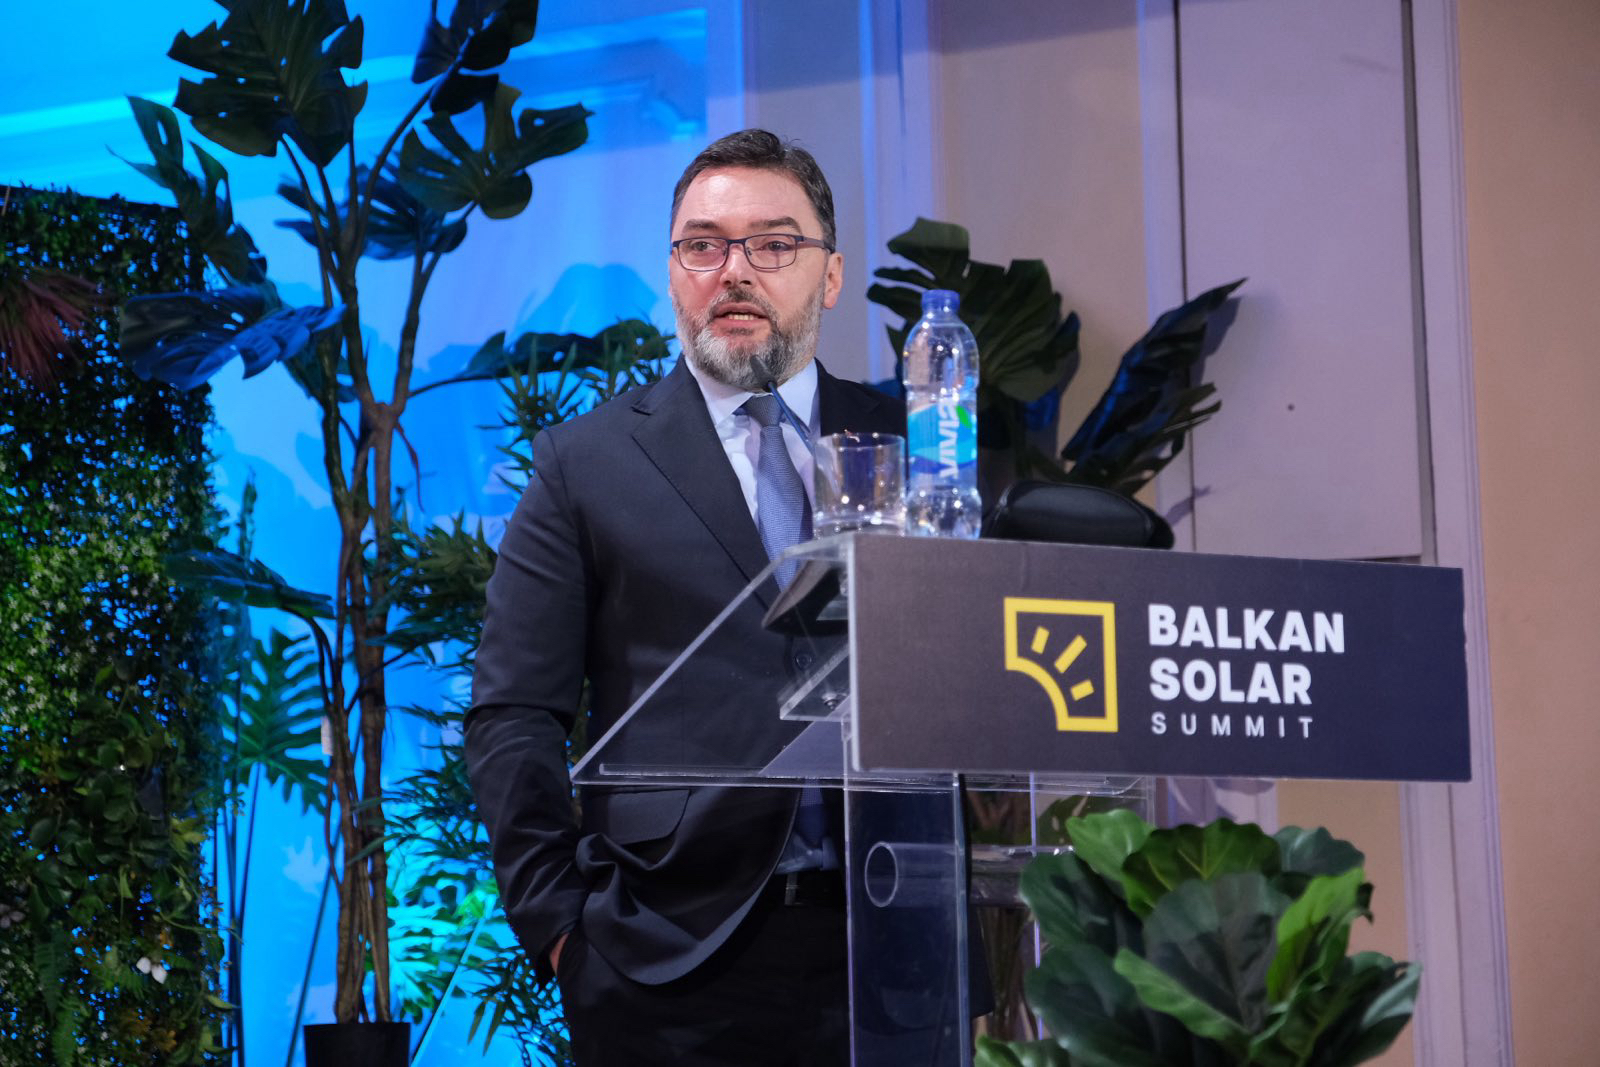 Picture for Министар Кошарац: Конференција ''Балкан Солар Самит'' је платформа за обликовање будућности енергетике